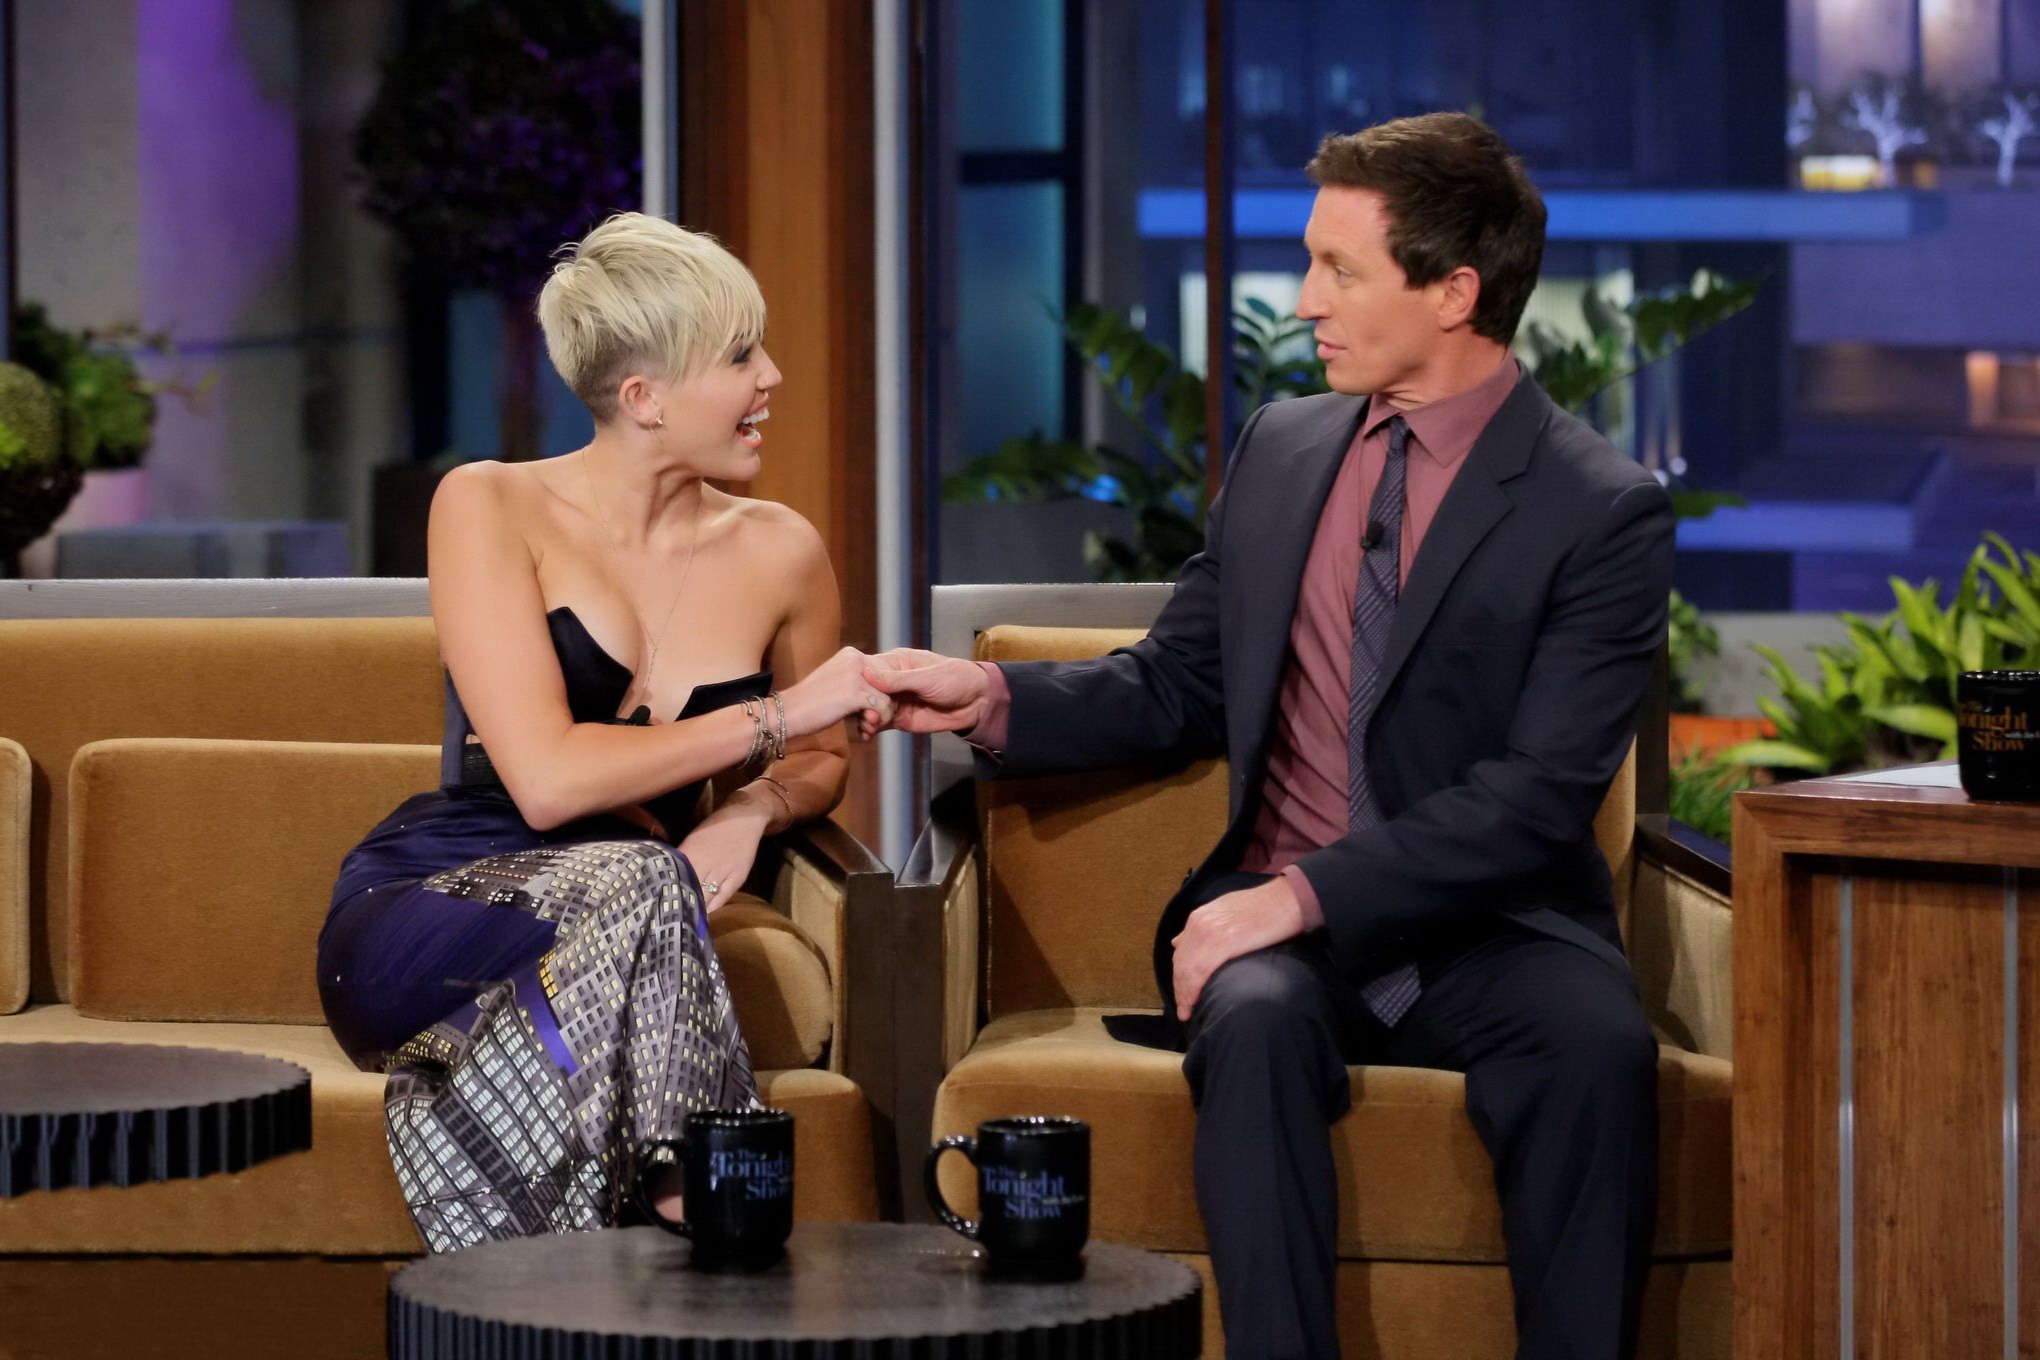 Miley Cyrus, seins nus, porte une robe très révélatrice dans l'émission de ce soir avec Jay Leno.
 #75250753